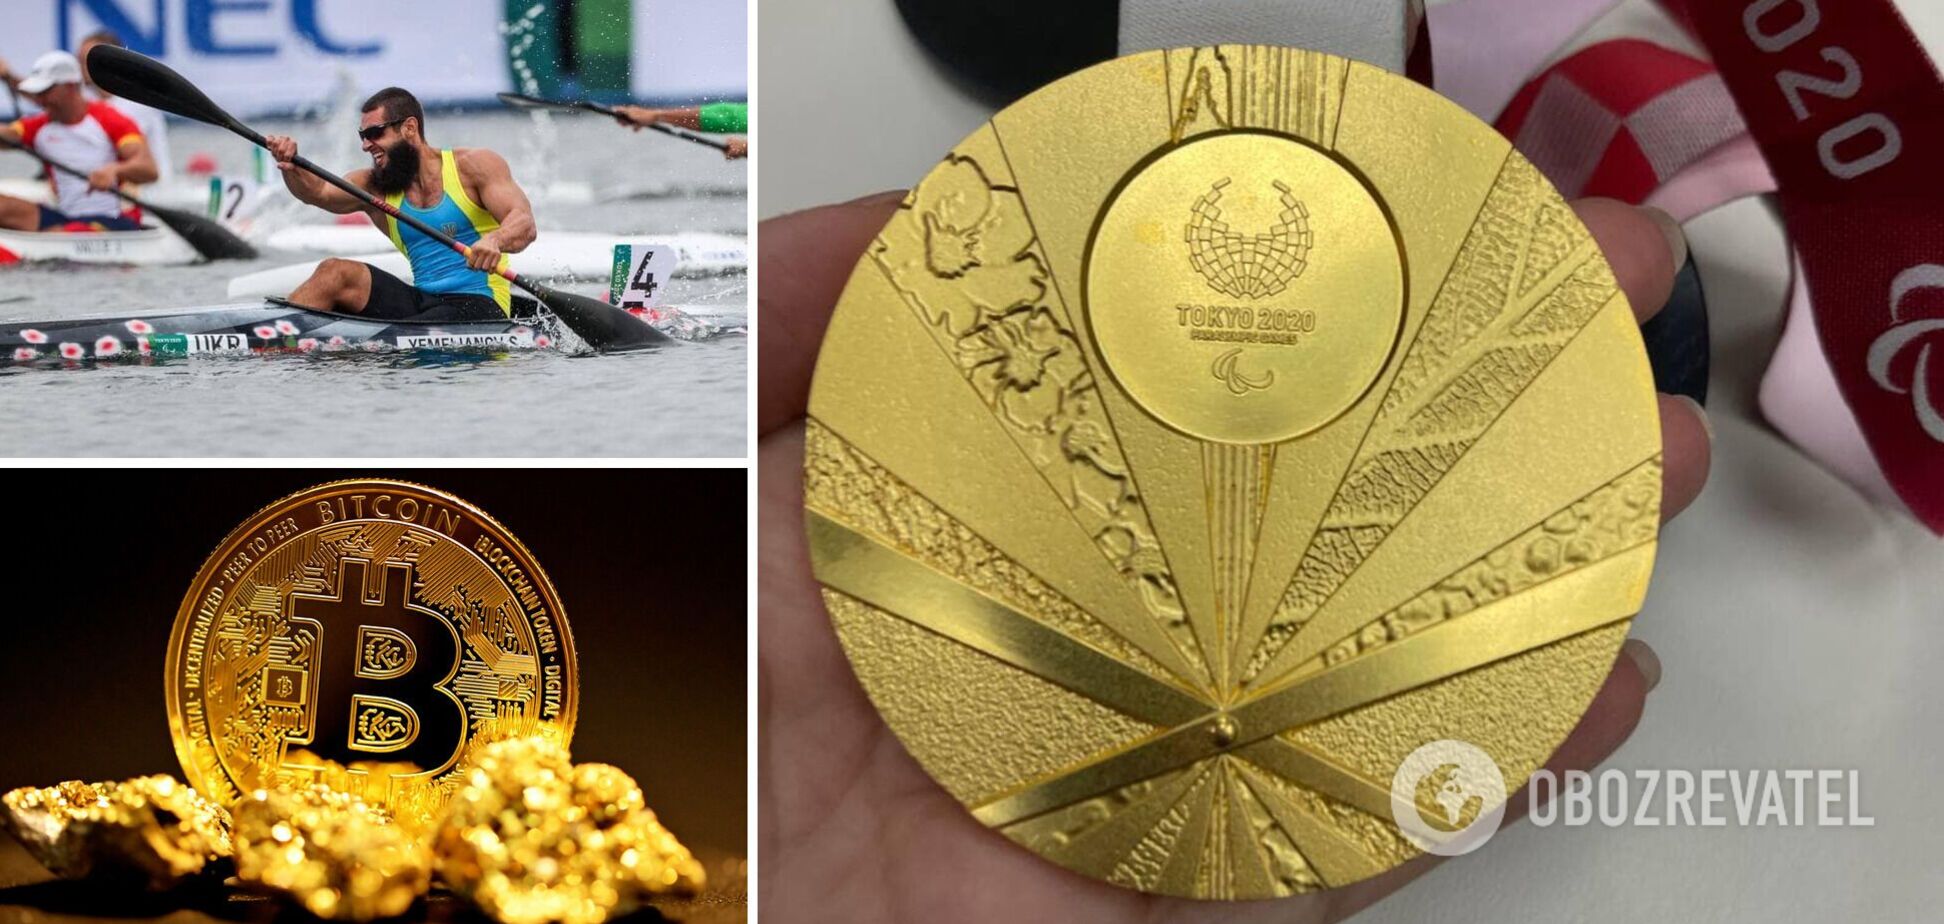 Золотую медаль украинского паралимпийского чемпиона Сергея Емельянова продали на аукционе